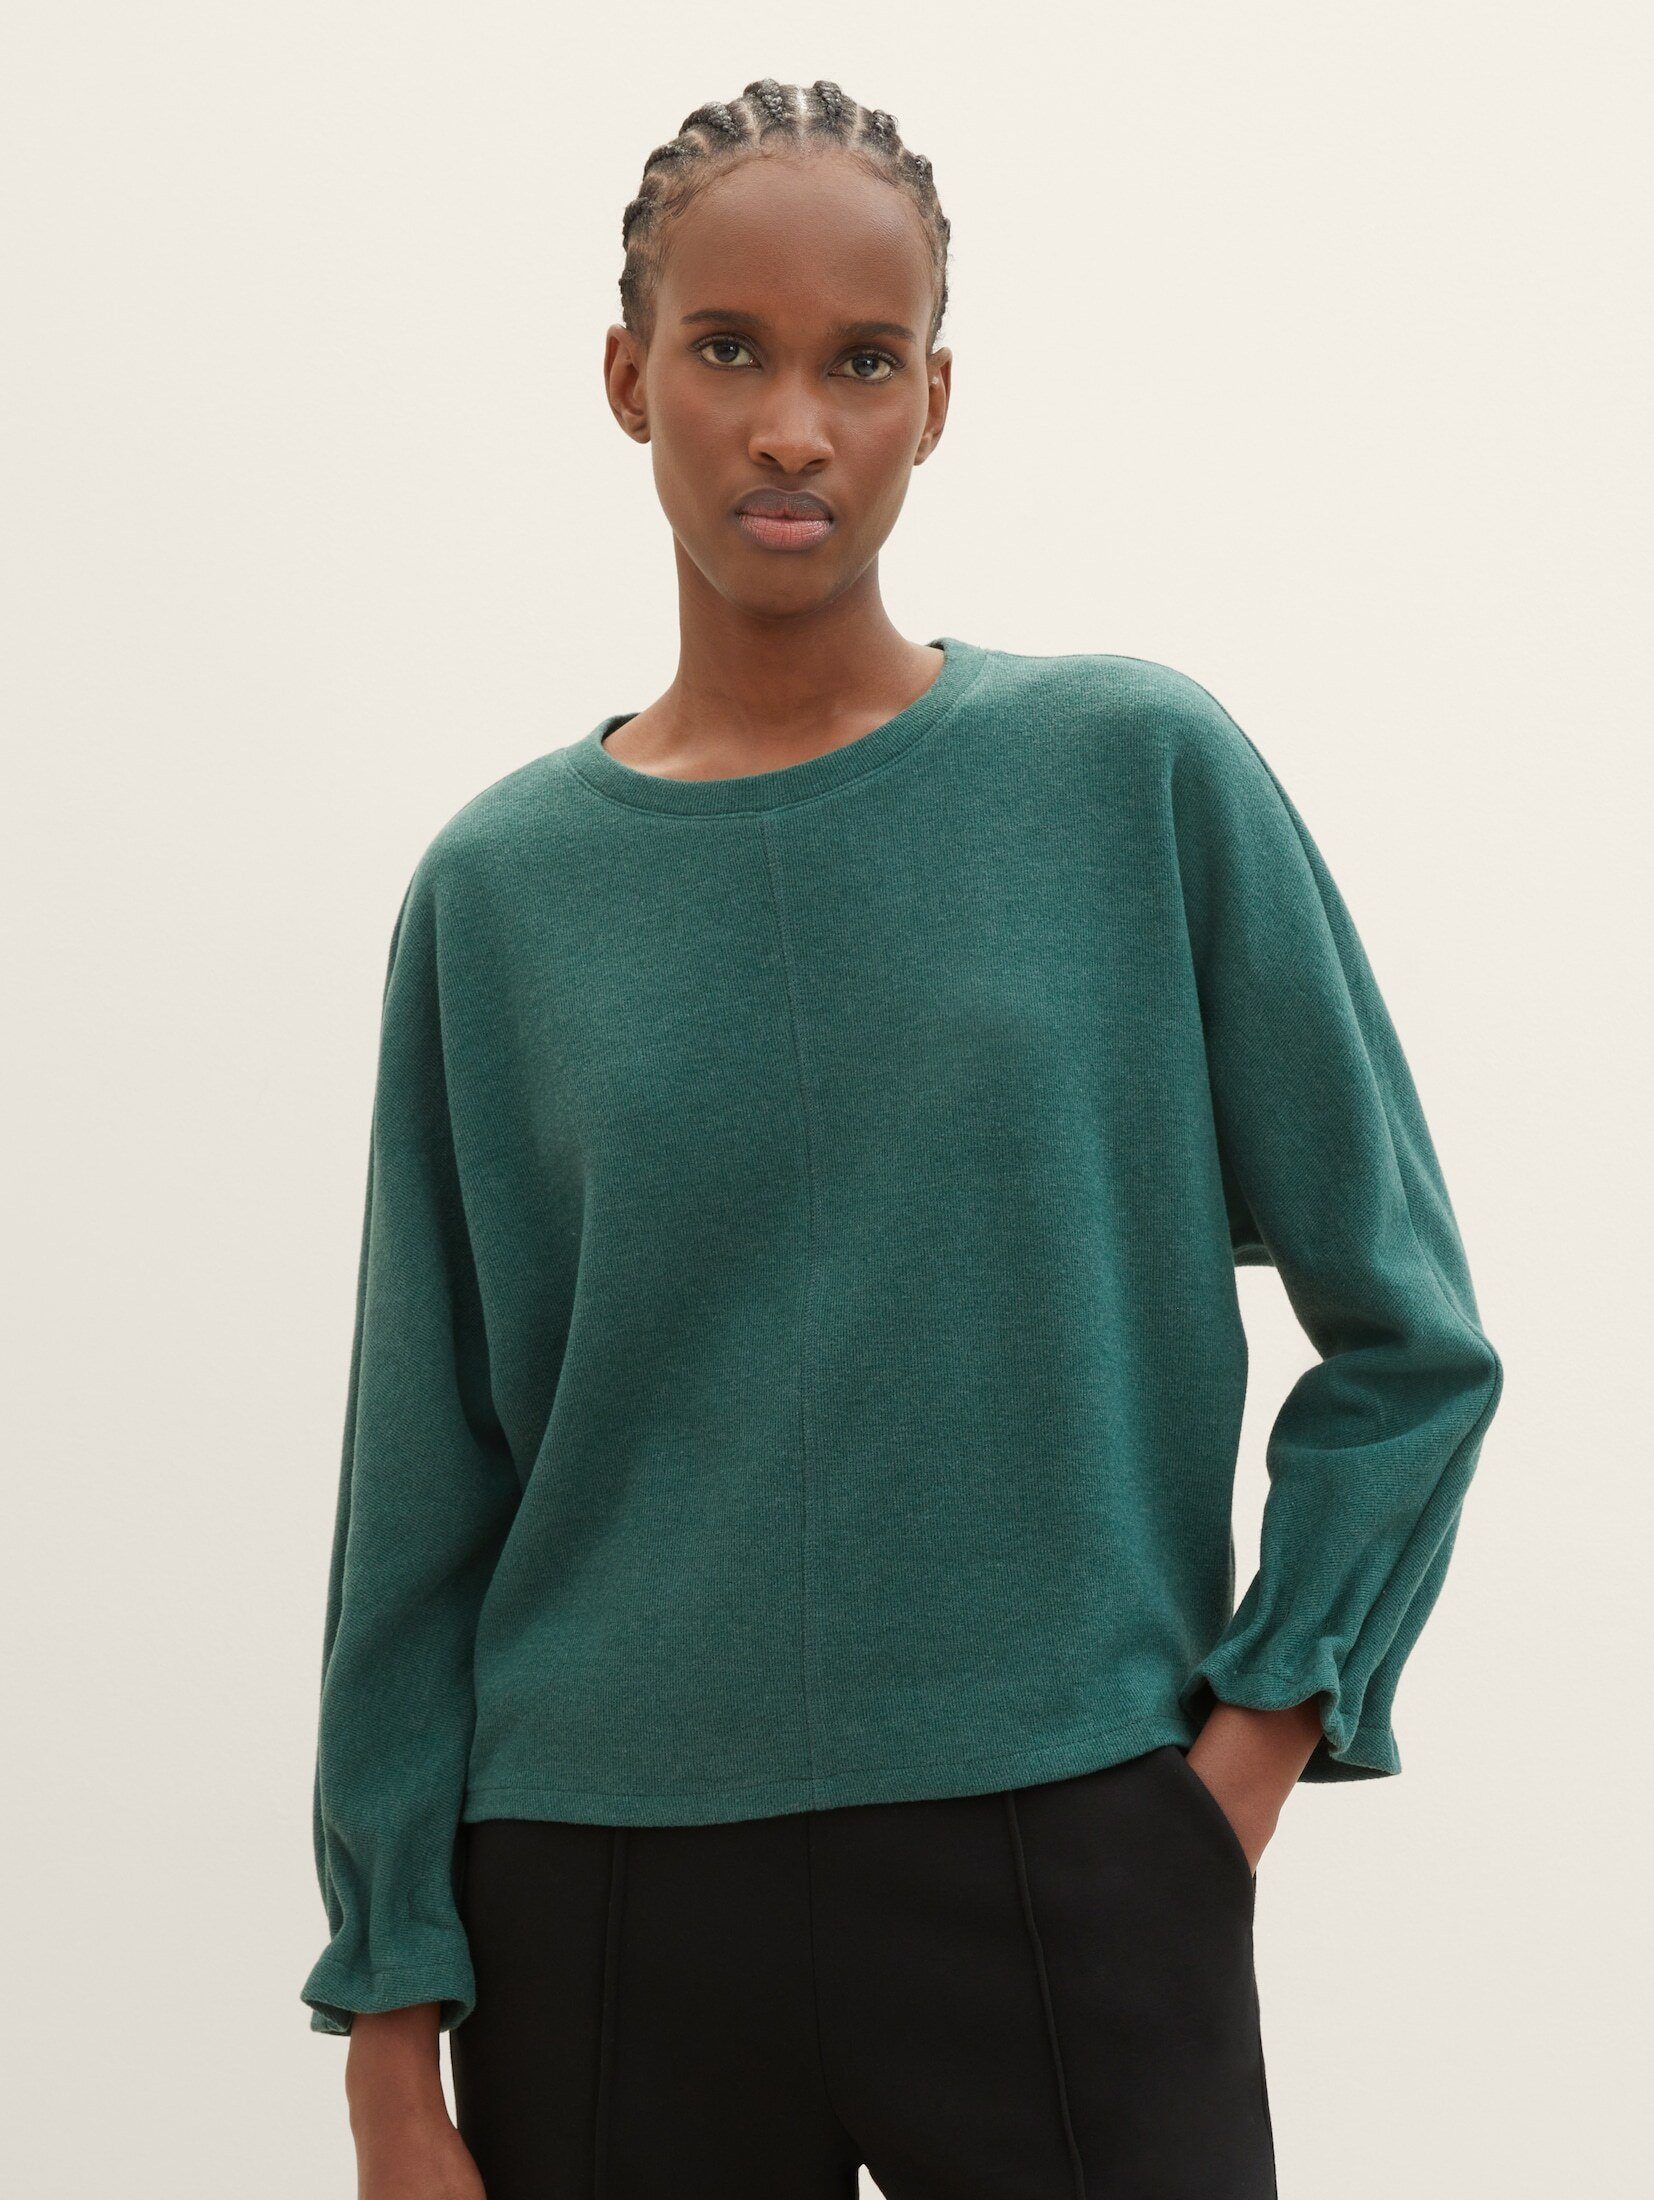 TOM TAILOR Denim Sweatshirt Sweater mit Fledermausärmeln green dust melange